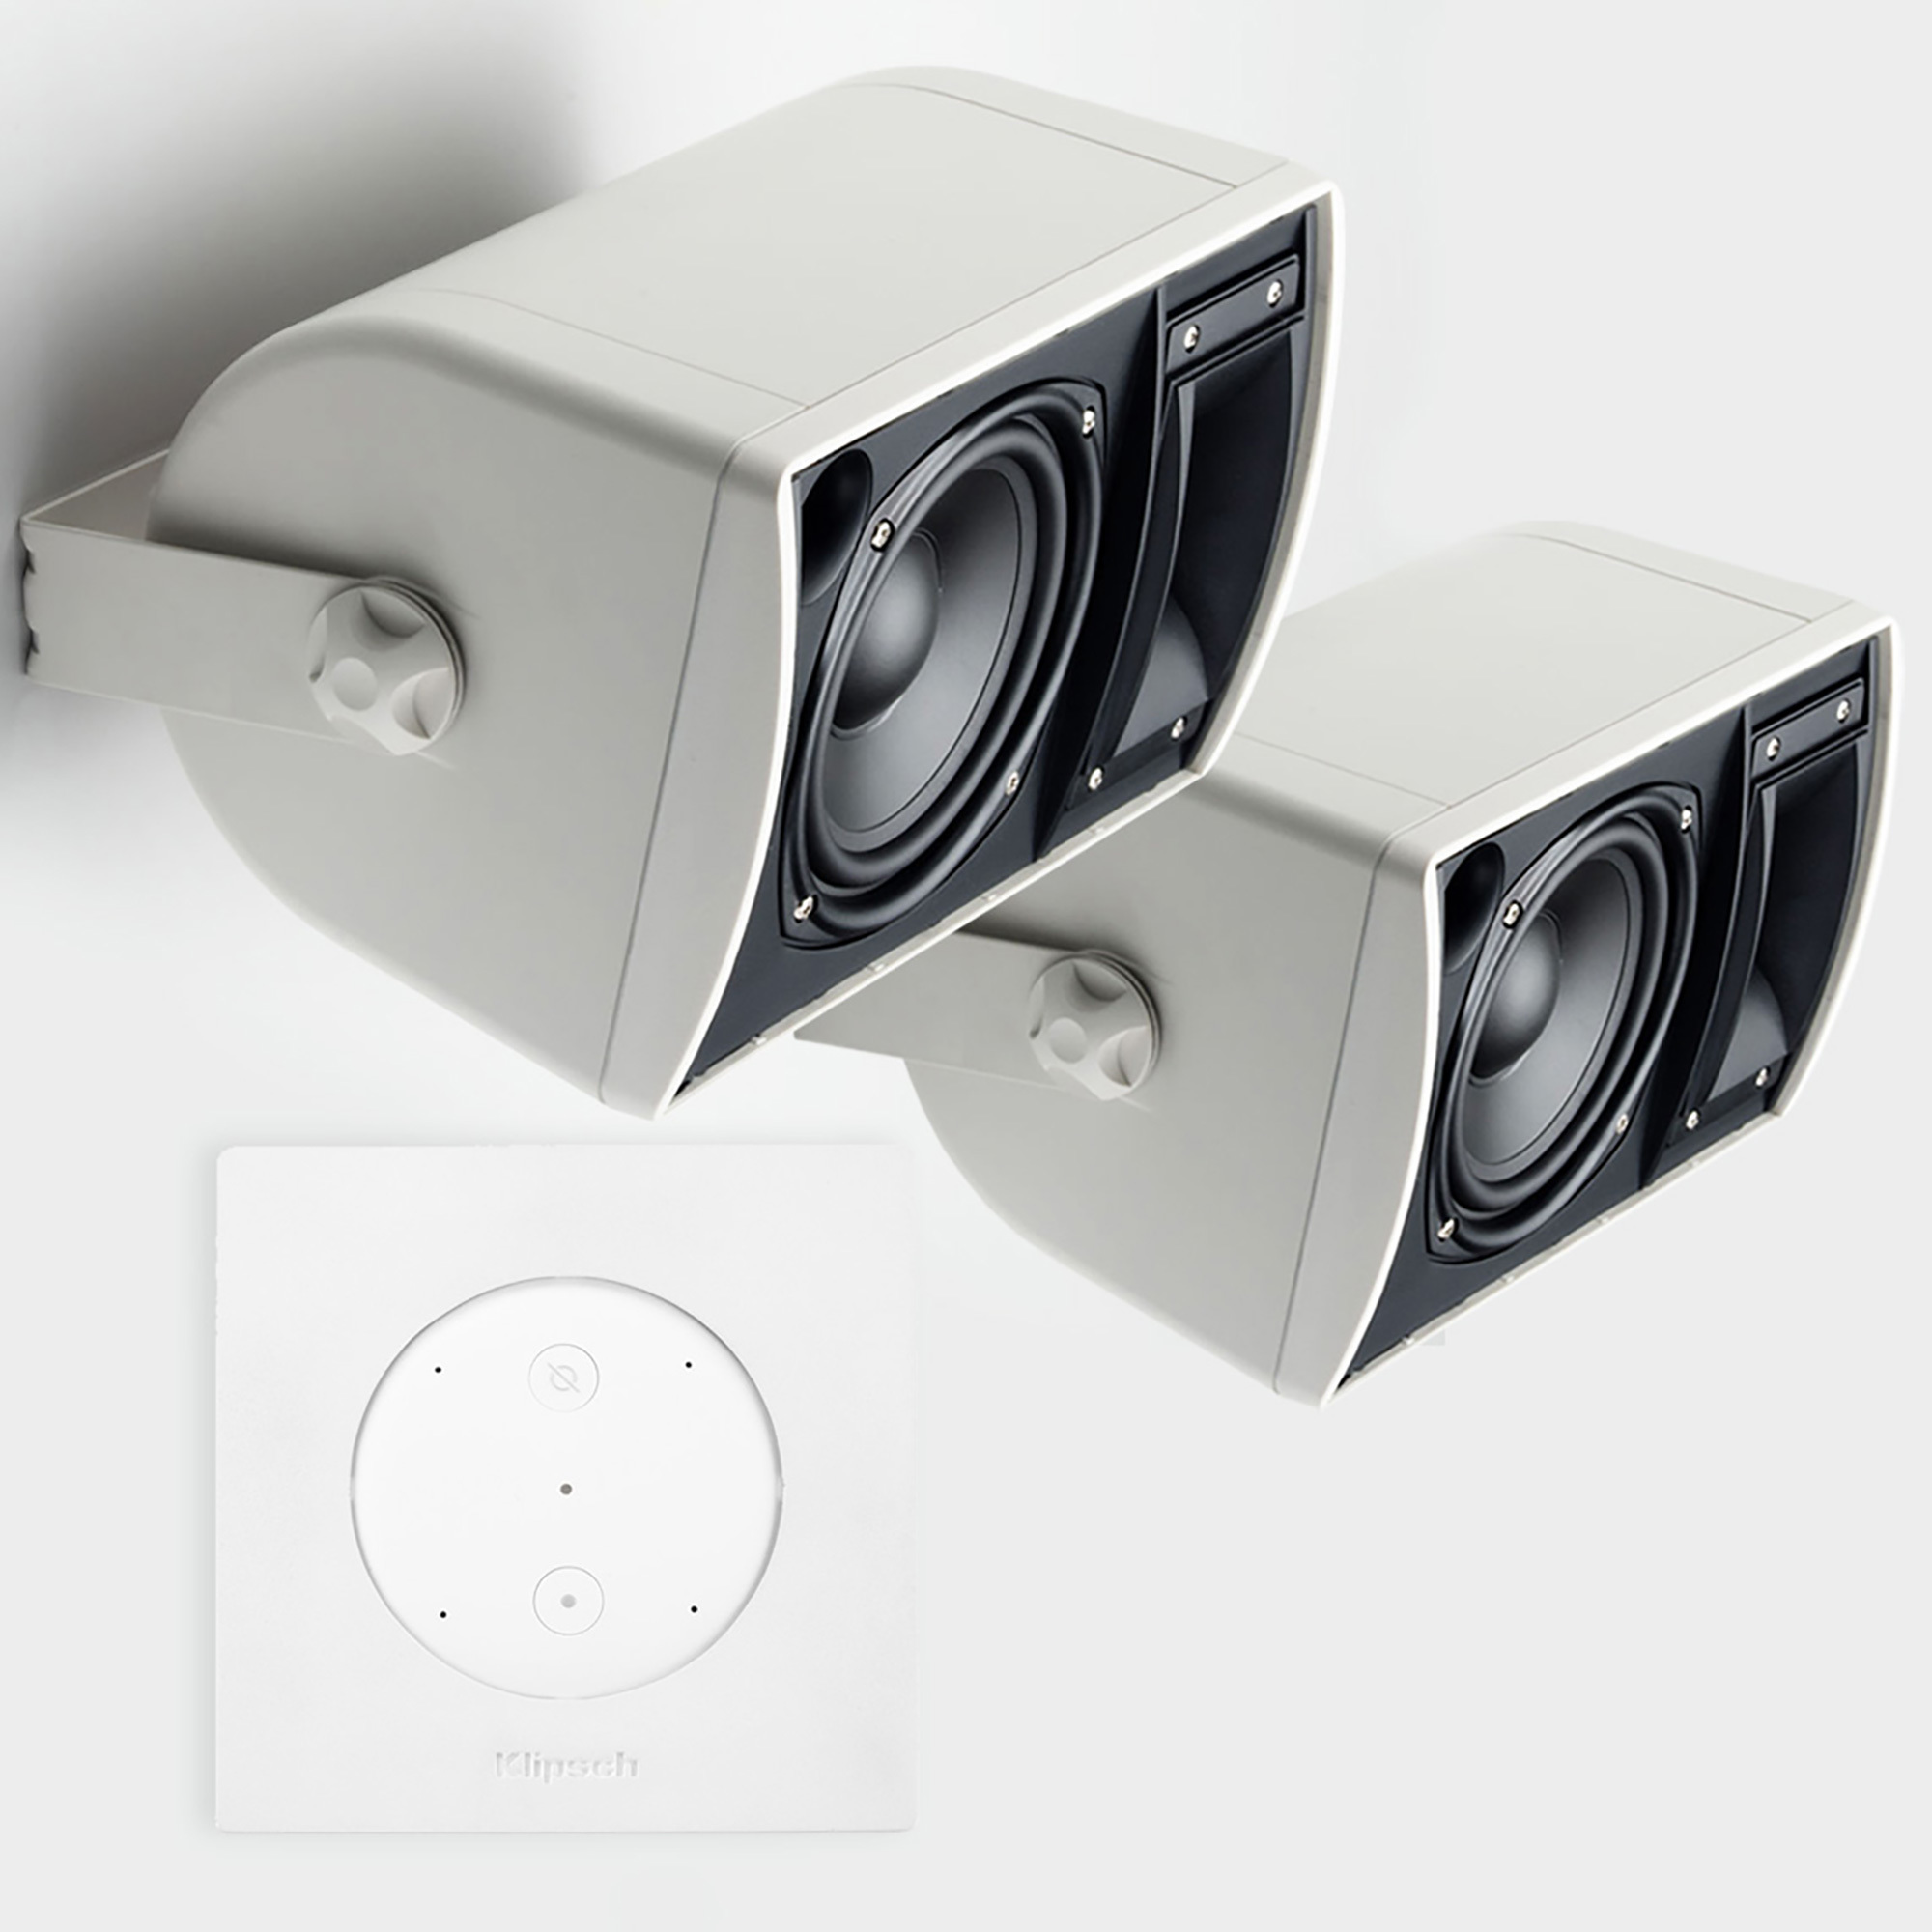 Amazon Echo Outdoor Smart Speaker 